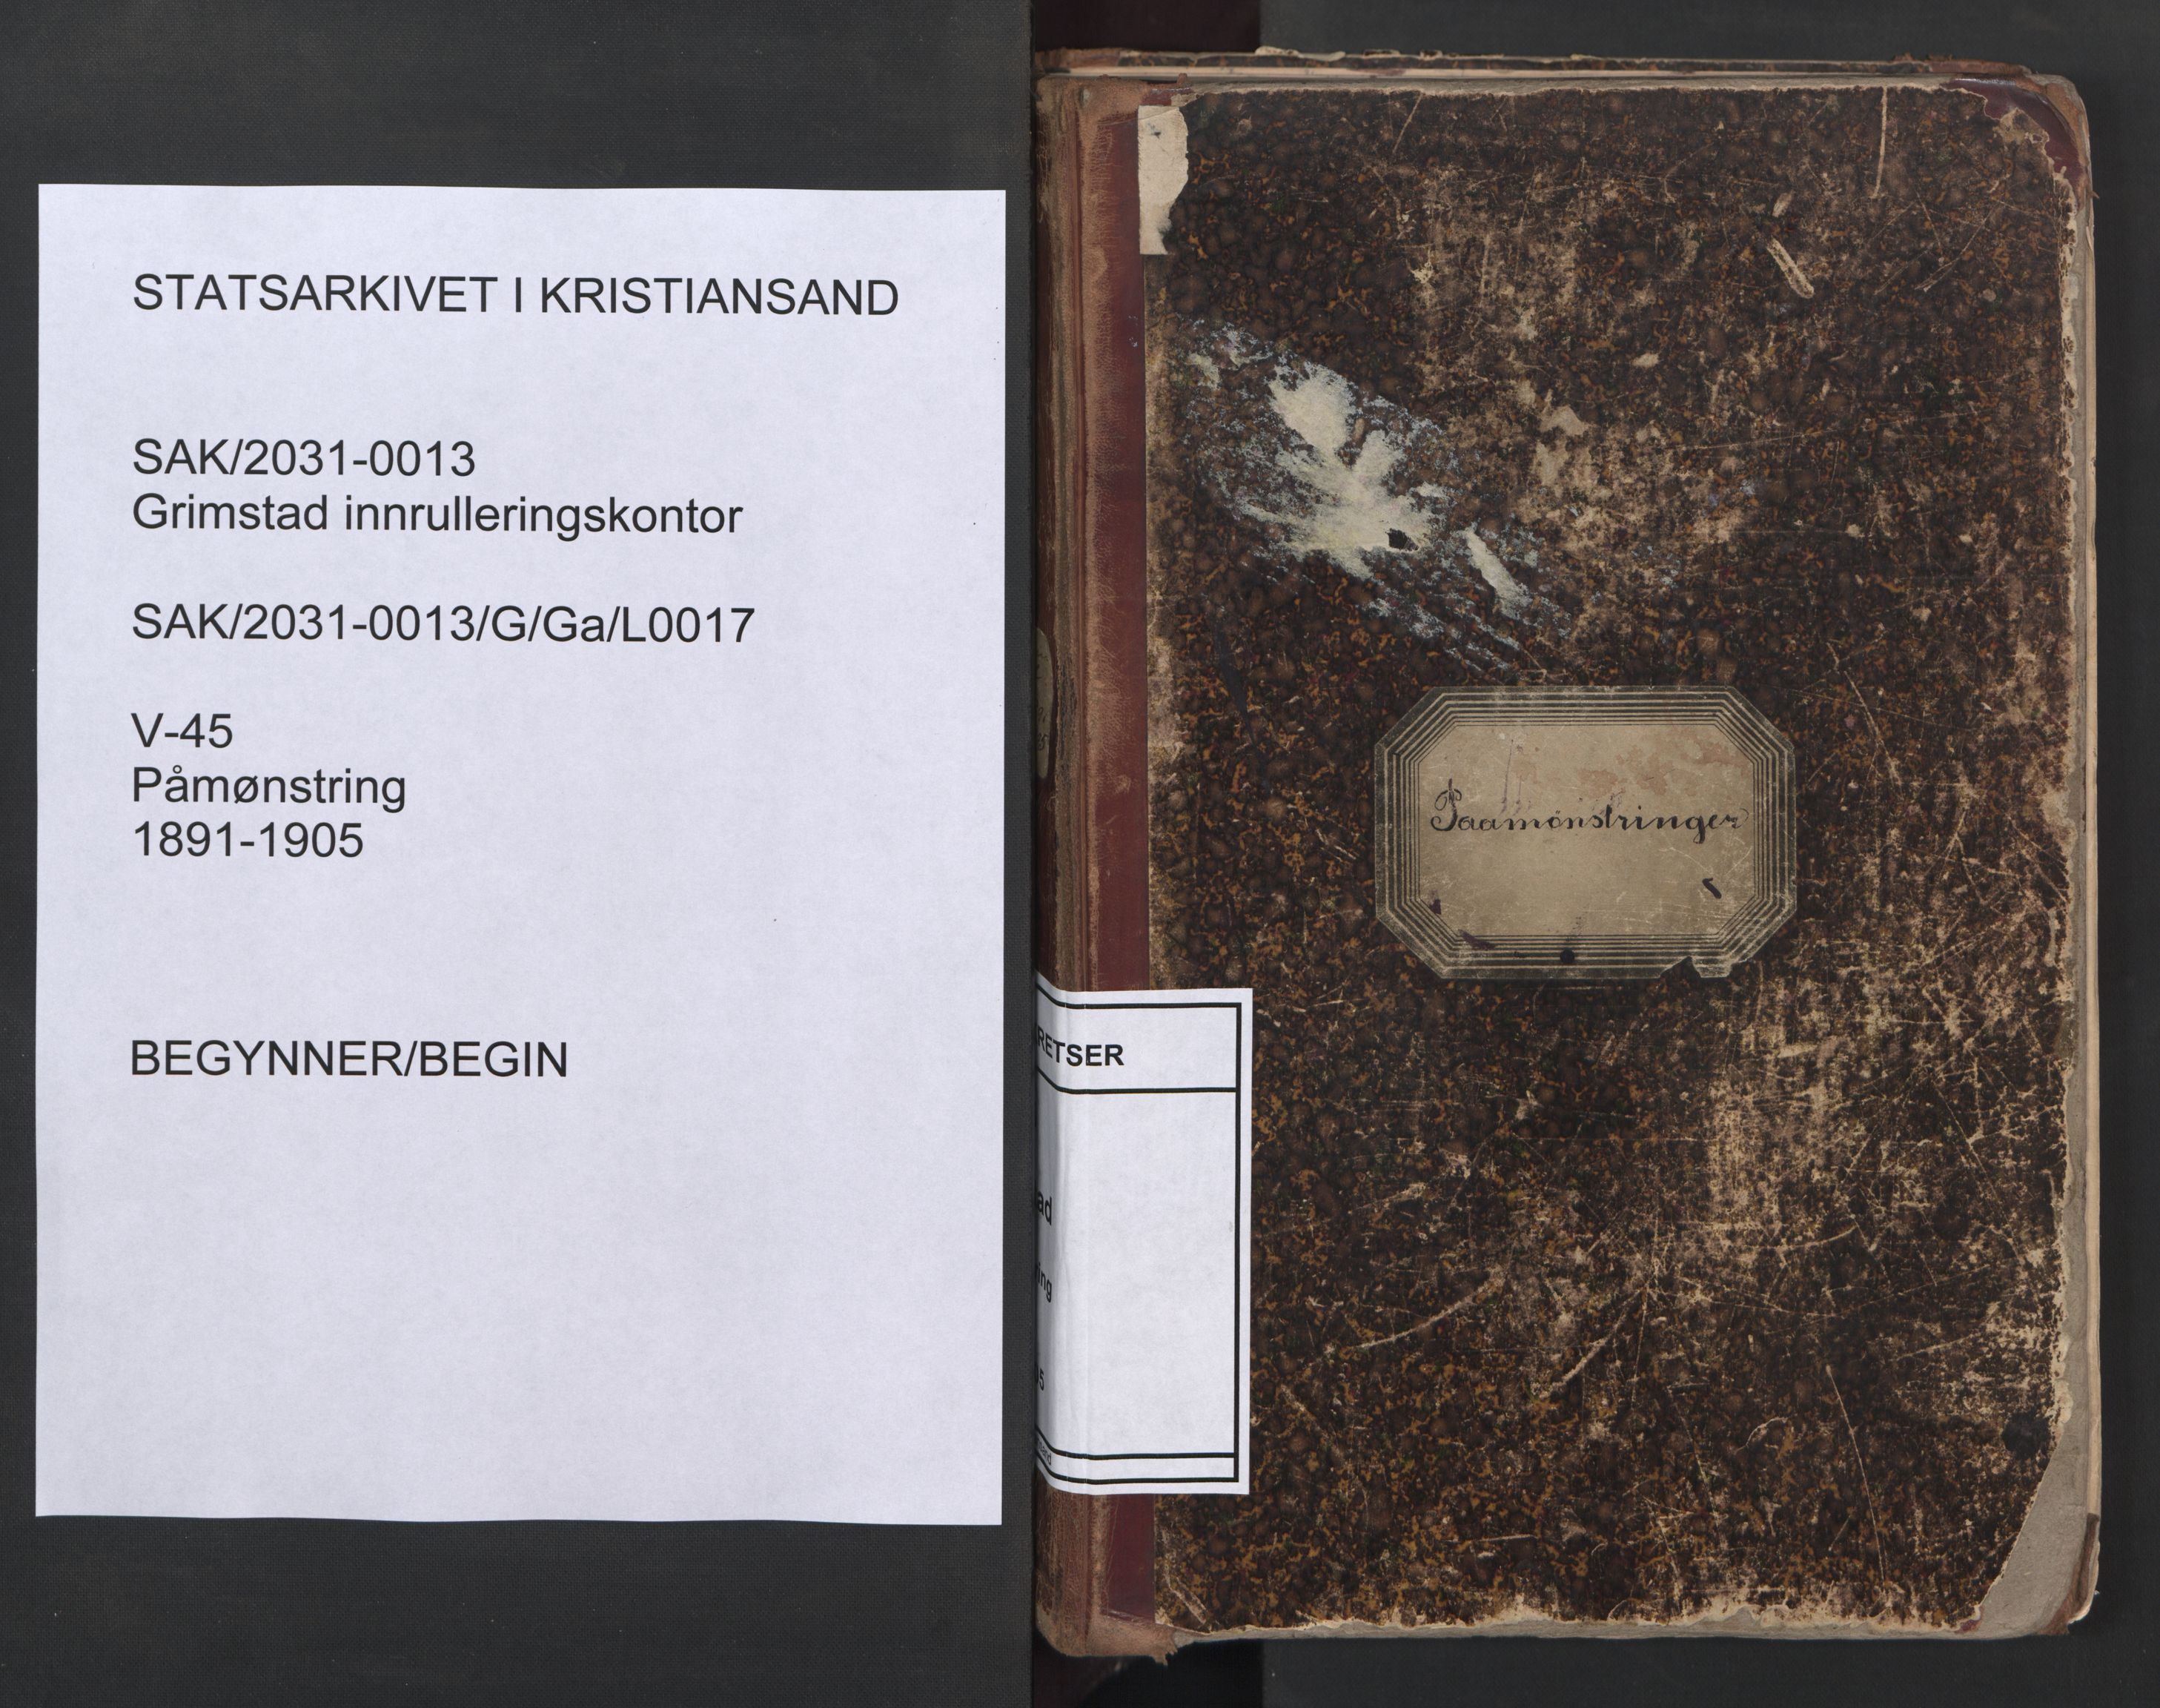 Grimstad mønstringskrets, SAK/2031-0013/G/Ga/L0017: Påmønstring, V-45, 1891-1905, p. 1